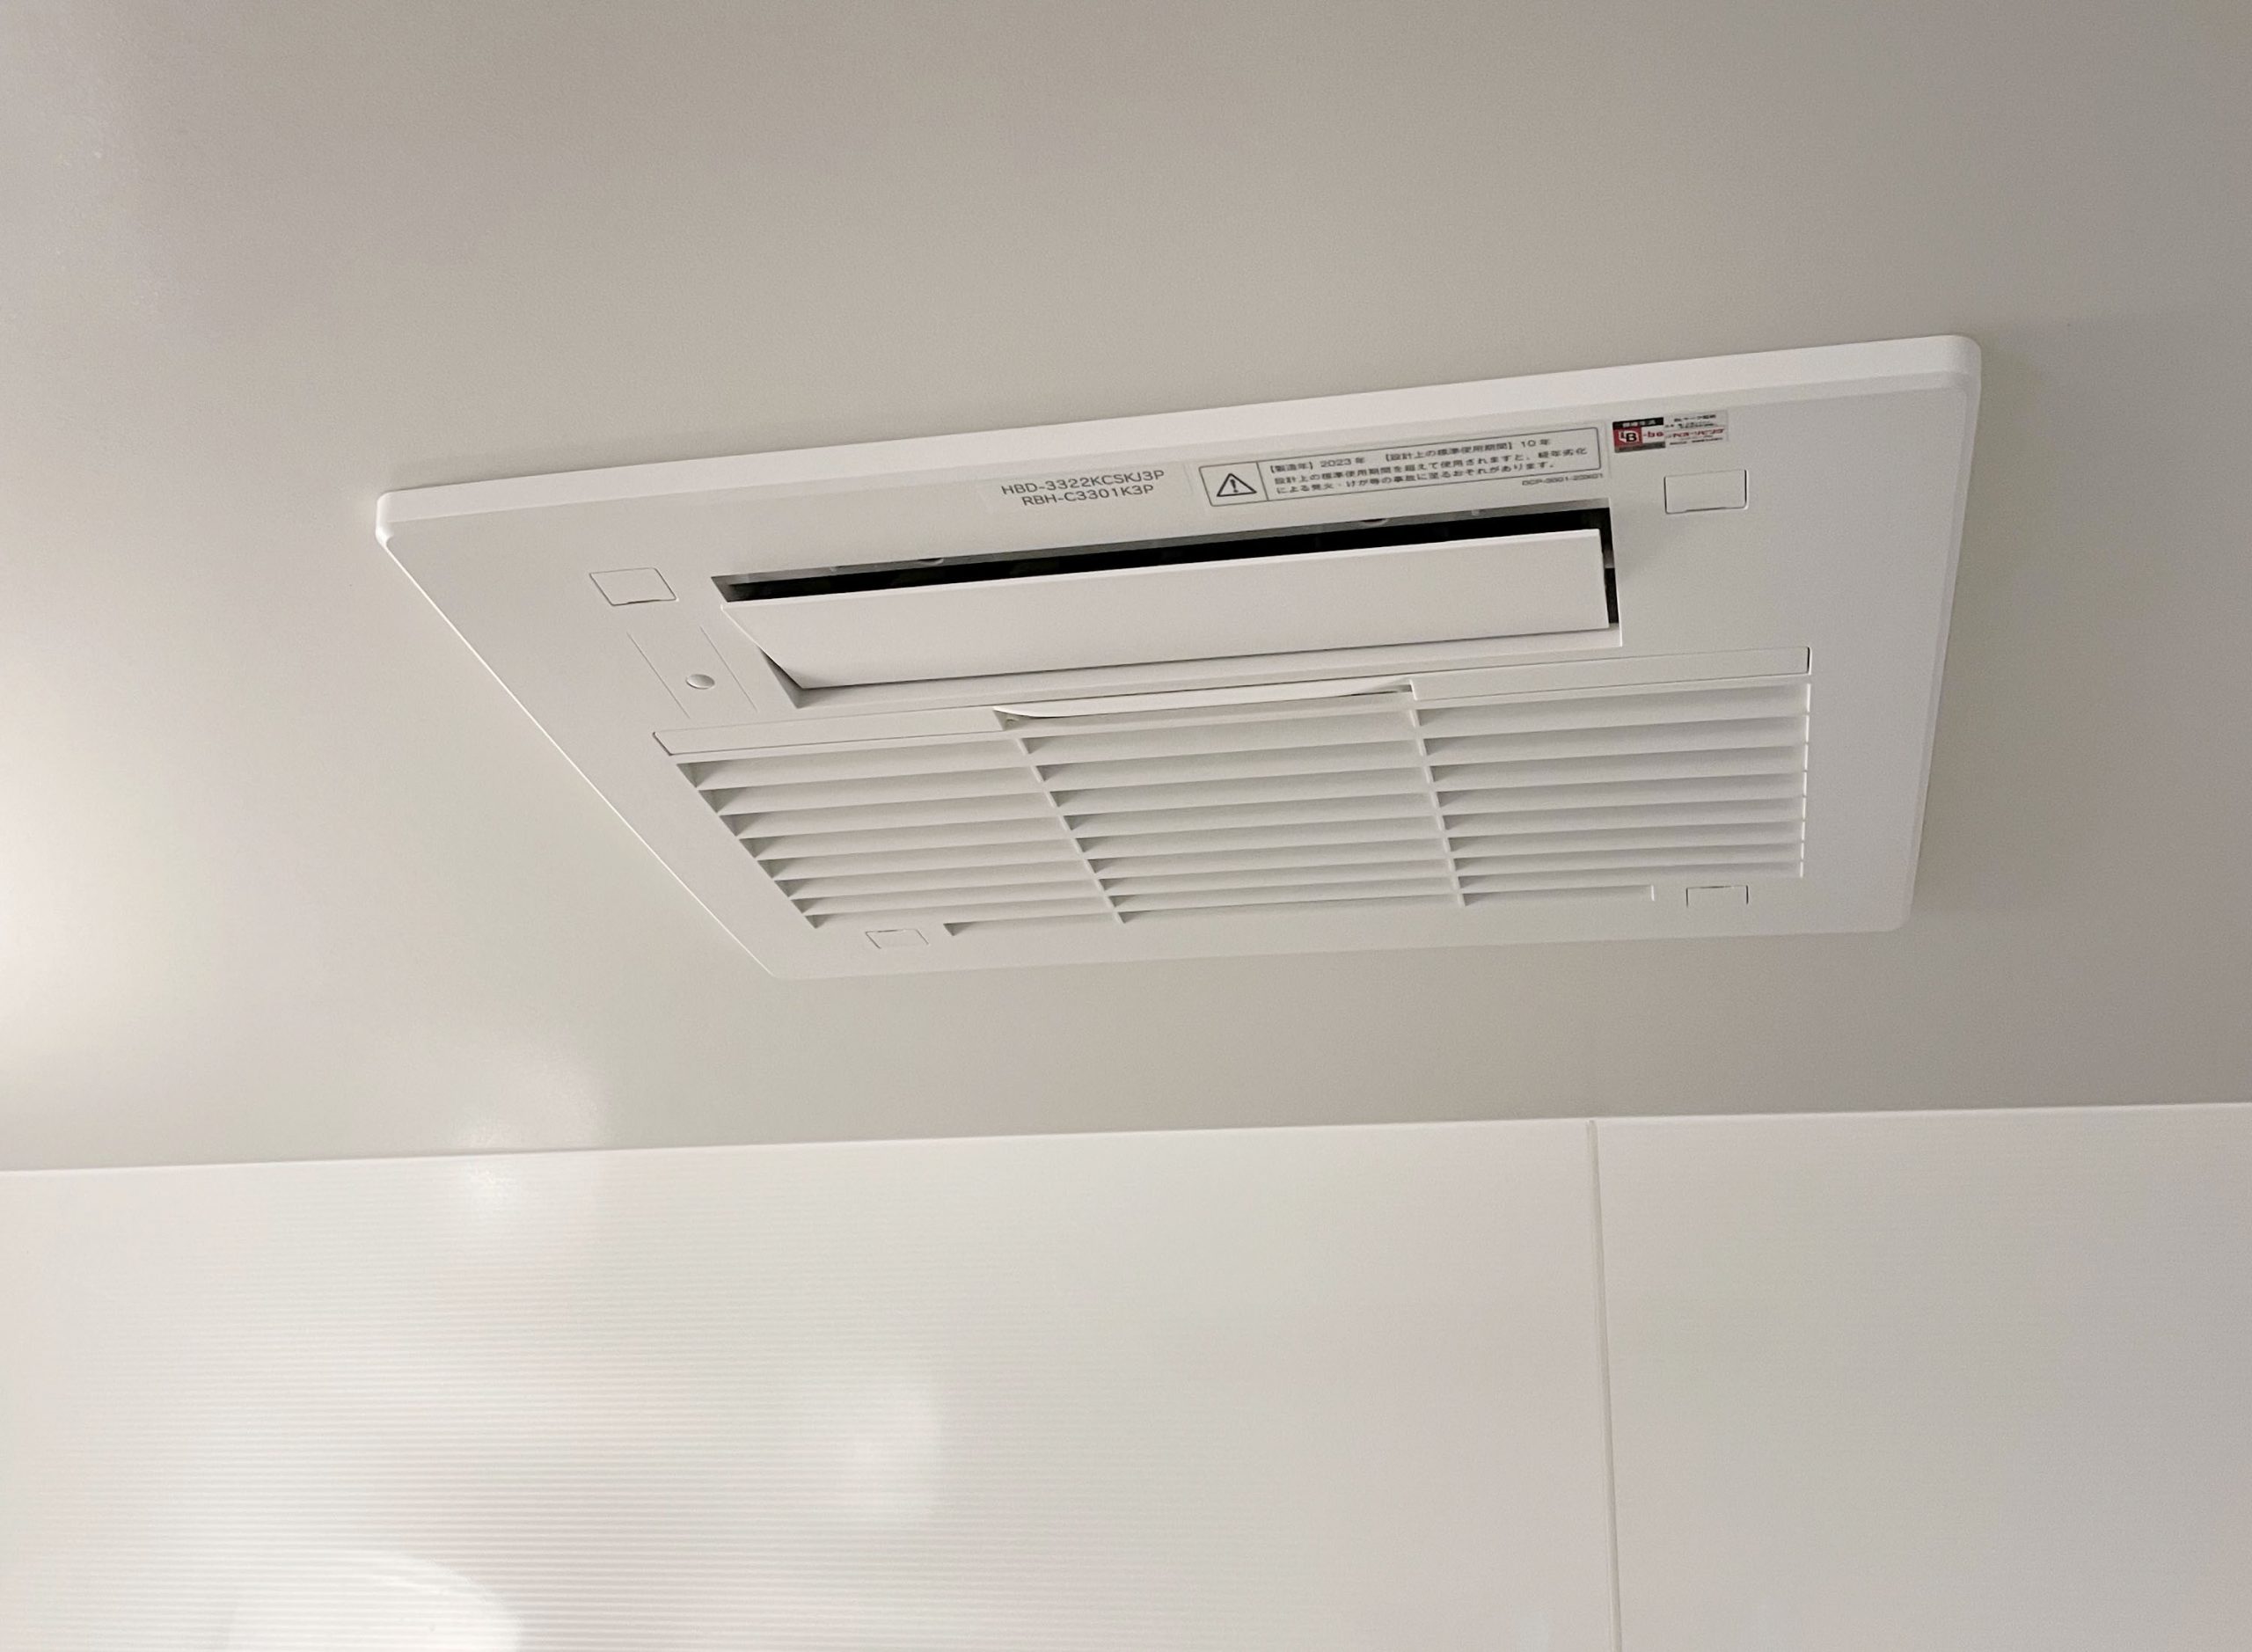 浴室暖房乾燥機/リンナイ ガス温水式浴室暖房乾燥機 [3室換気・暖房能力3.3kw]/RBH-C3301K3P